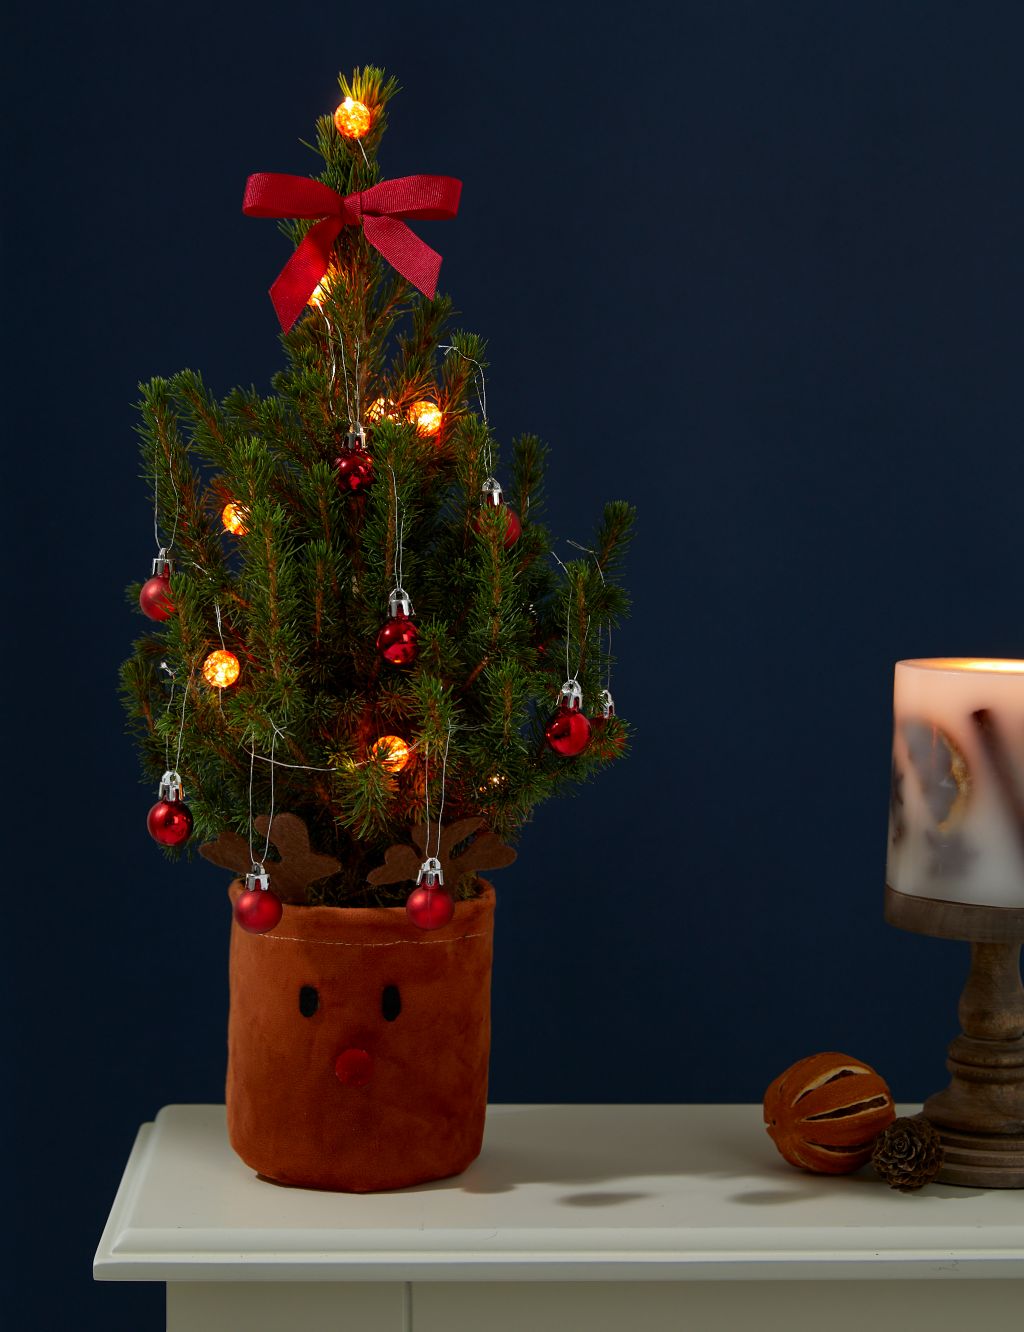 Letterbox Real Christmas Tree in Reindeer Basket